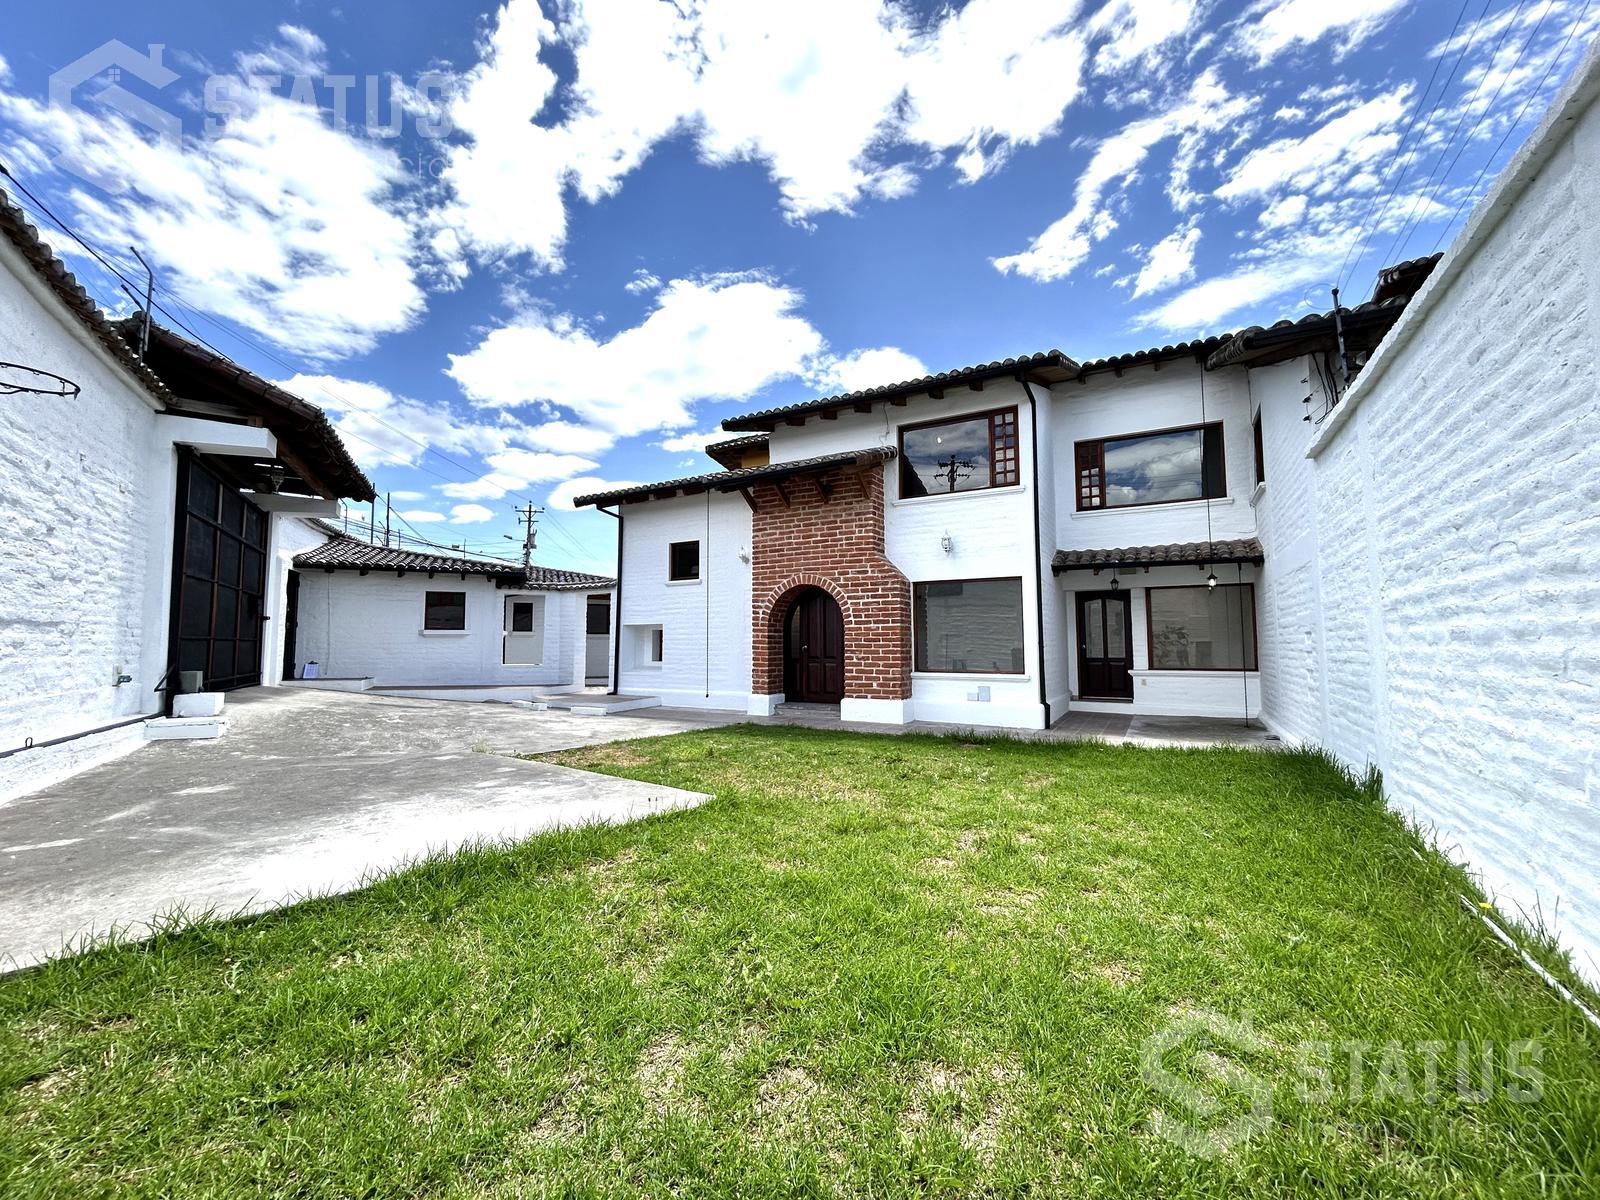 Vendo casa Independiente, terreno 1026m2, 3 Dorm., 3 Garajes, sector La Armenia II, $250.000